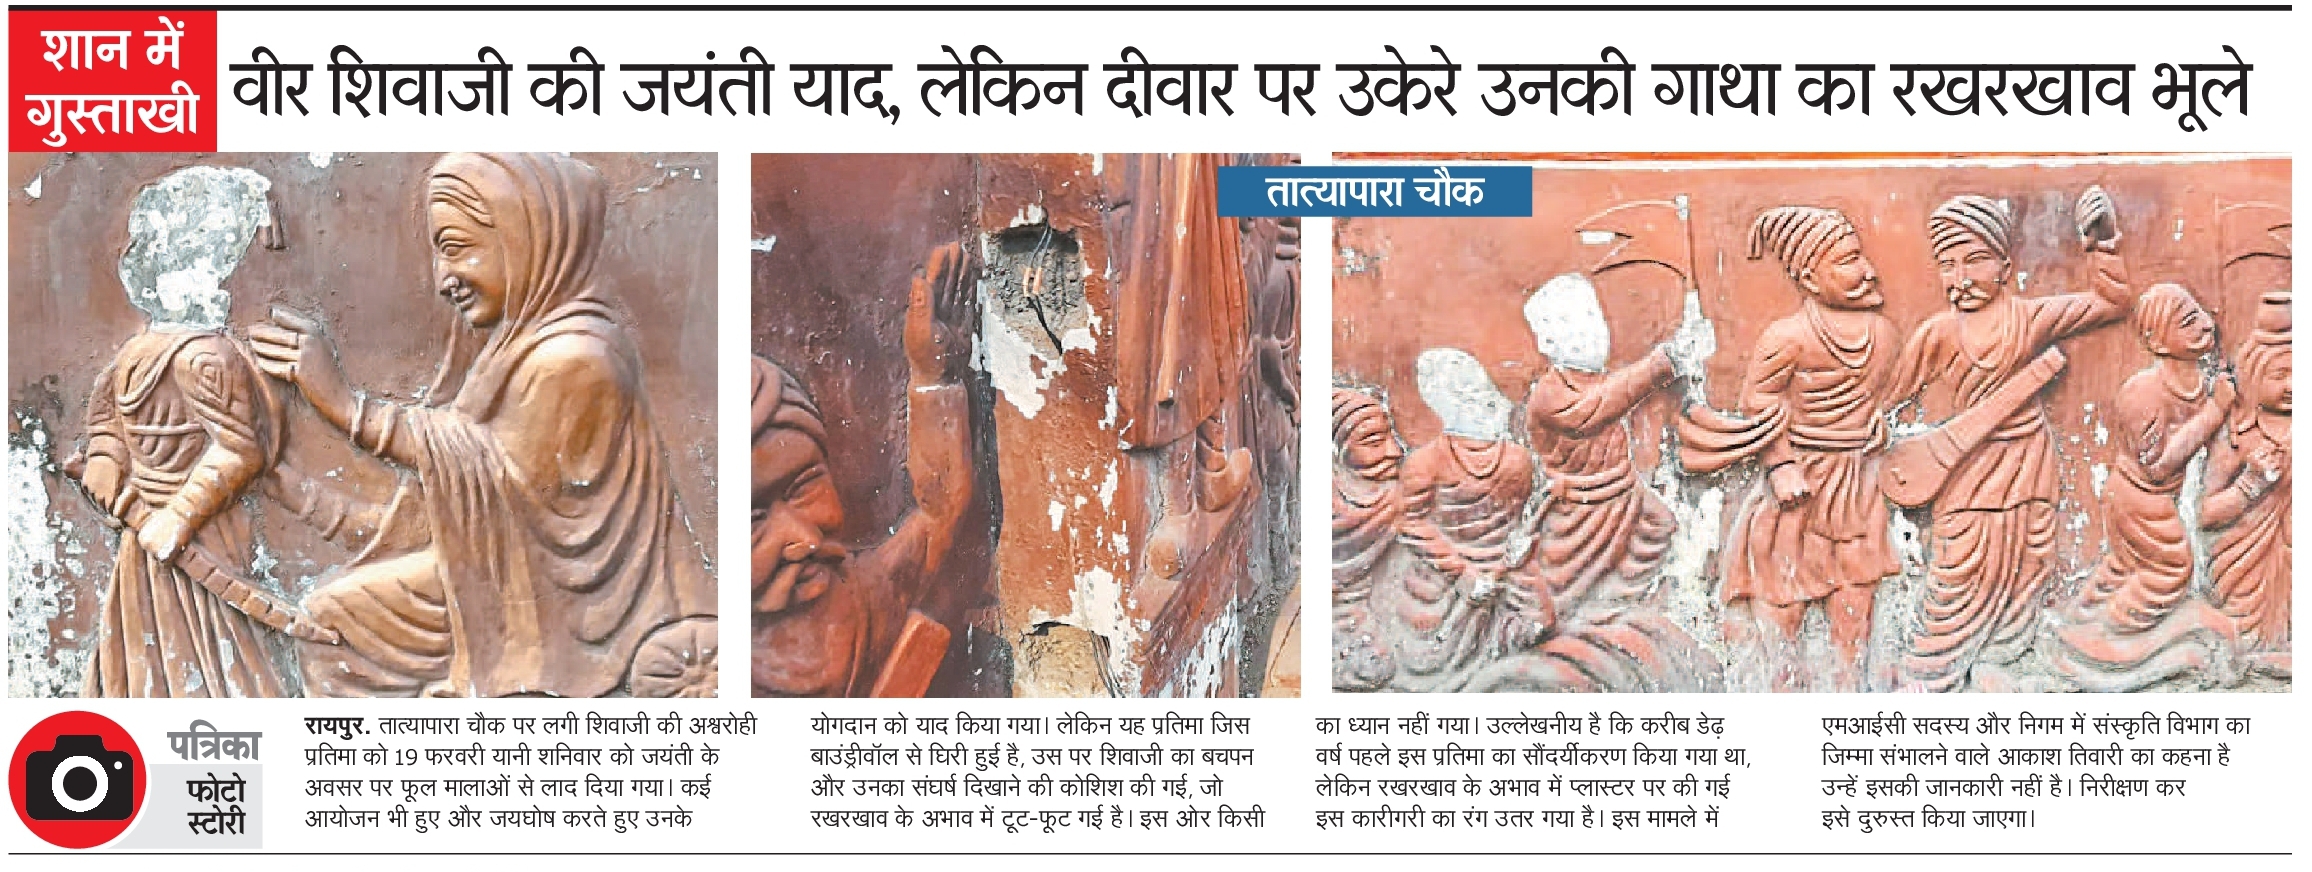 Disgust in the pride of Chhatrapati Veer Shivaji Maharaj